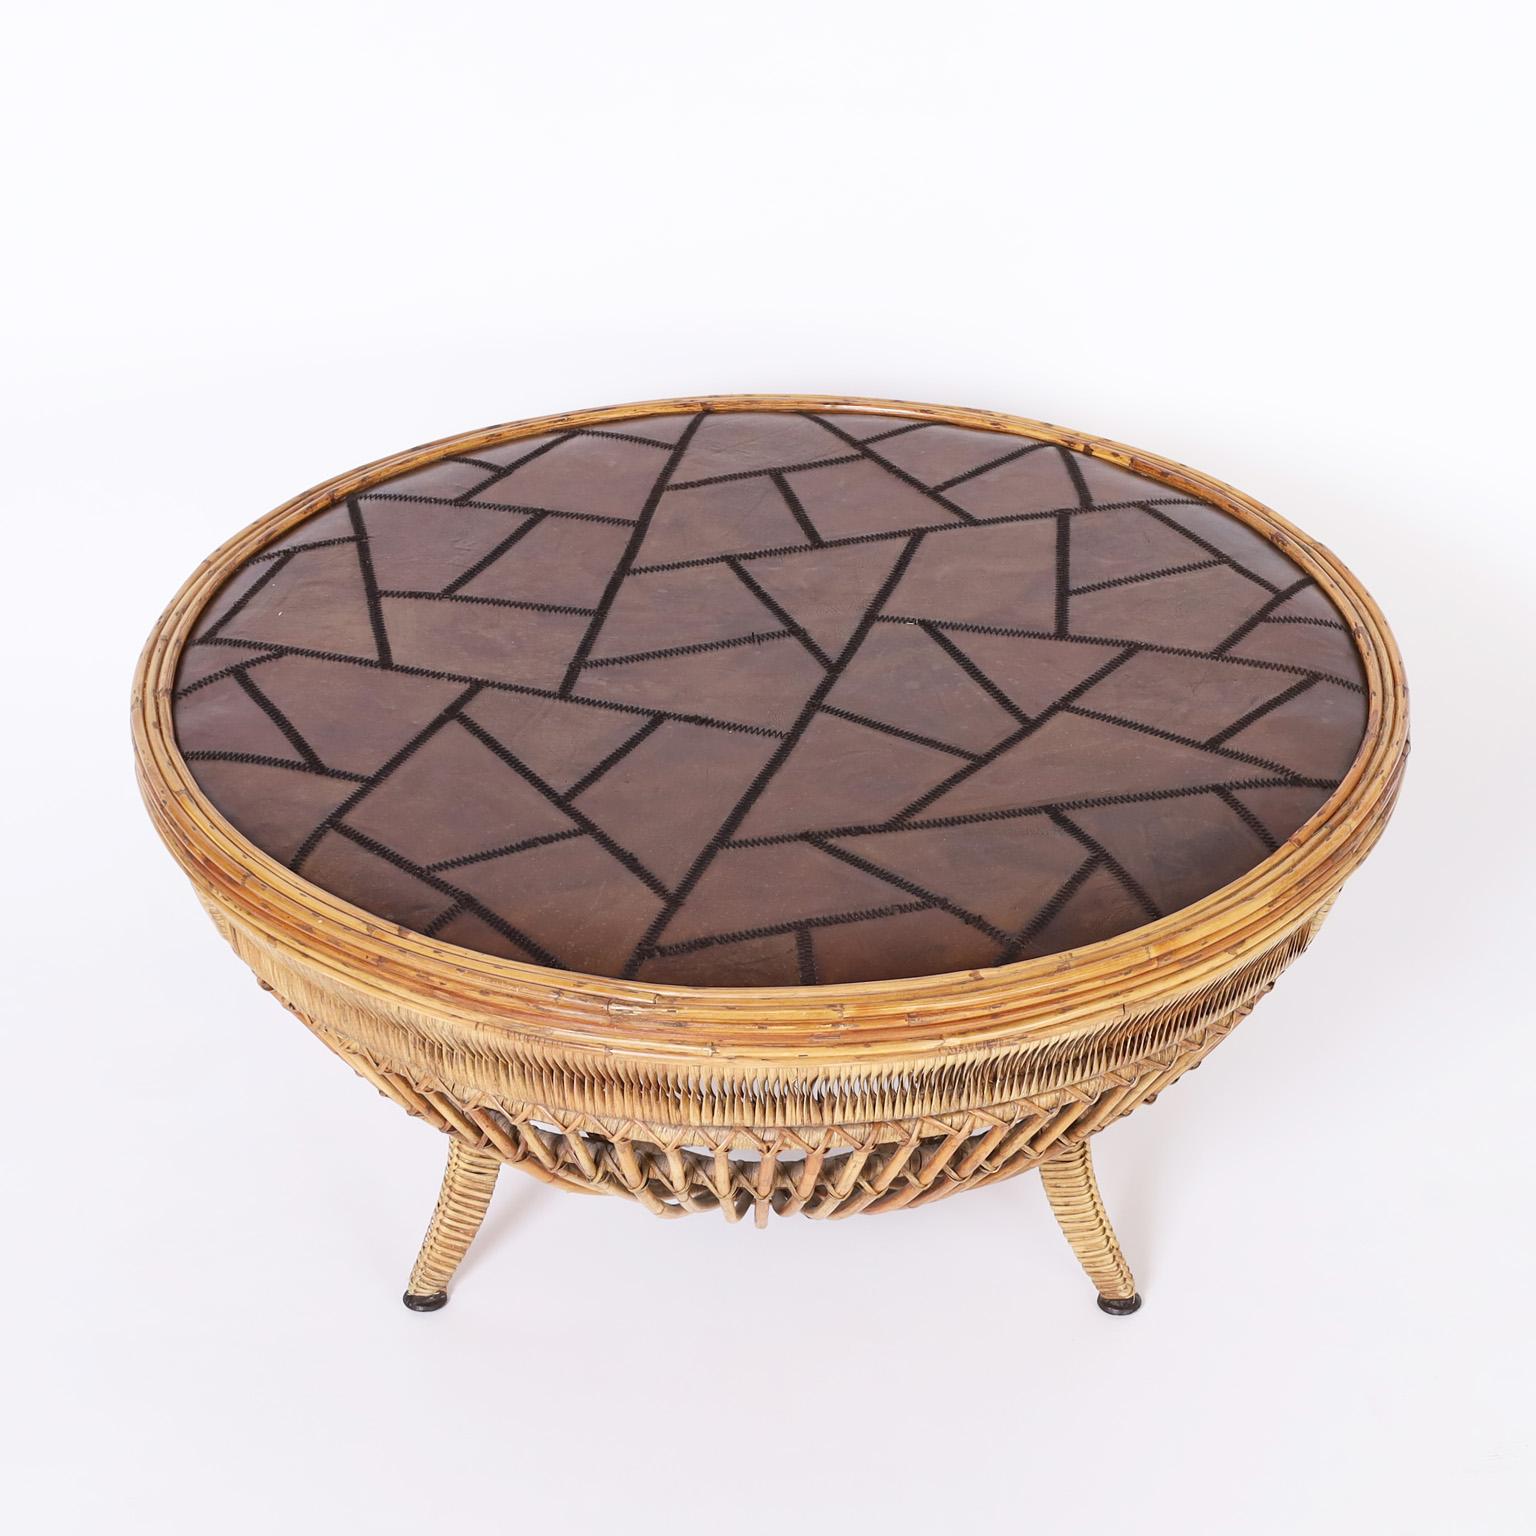 Table basse de style colonial britannique avec un plateau rond composé d'une mosaïque abstraite de cuir cousu sur une forme de tambour classique réalisée en rotin enrobé de roseau sur trois pieds enveloppés.